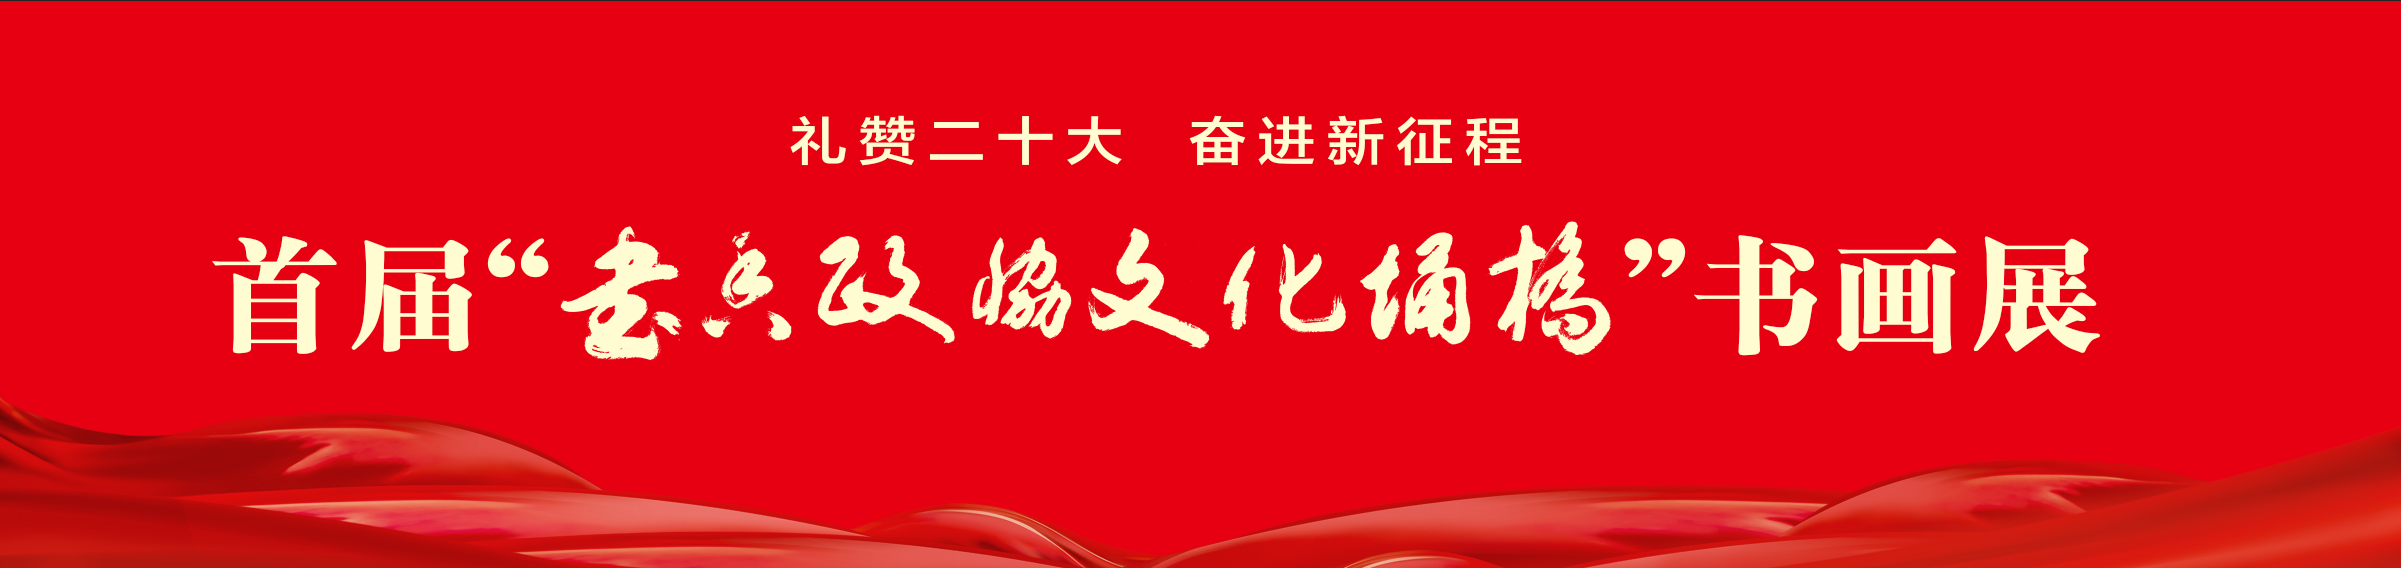 《礼赞二十大 奋进新征程——首届“书香政协 文化埇桥”书画展》